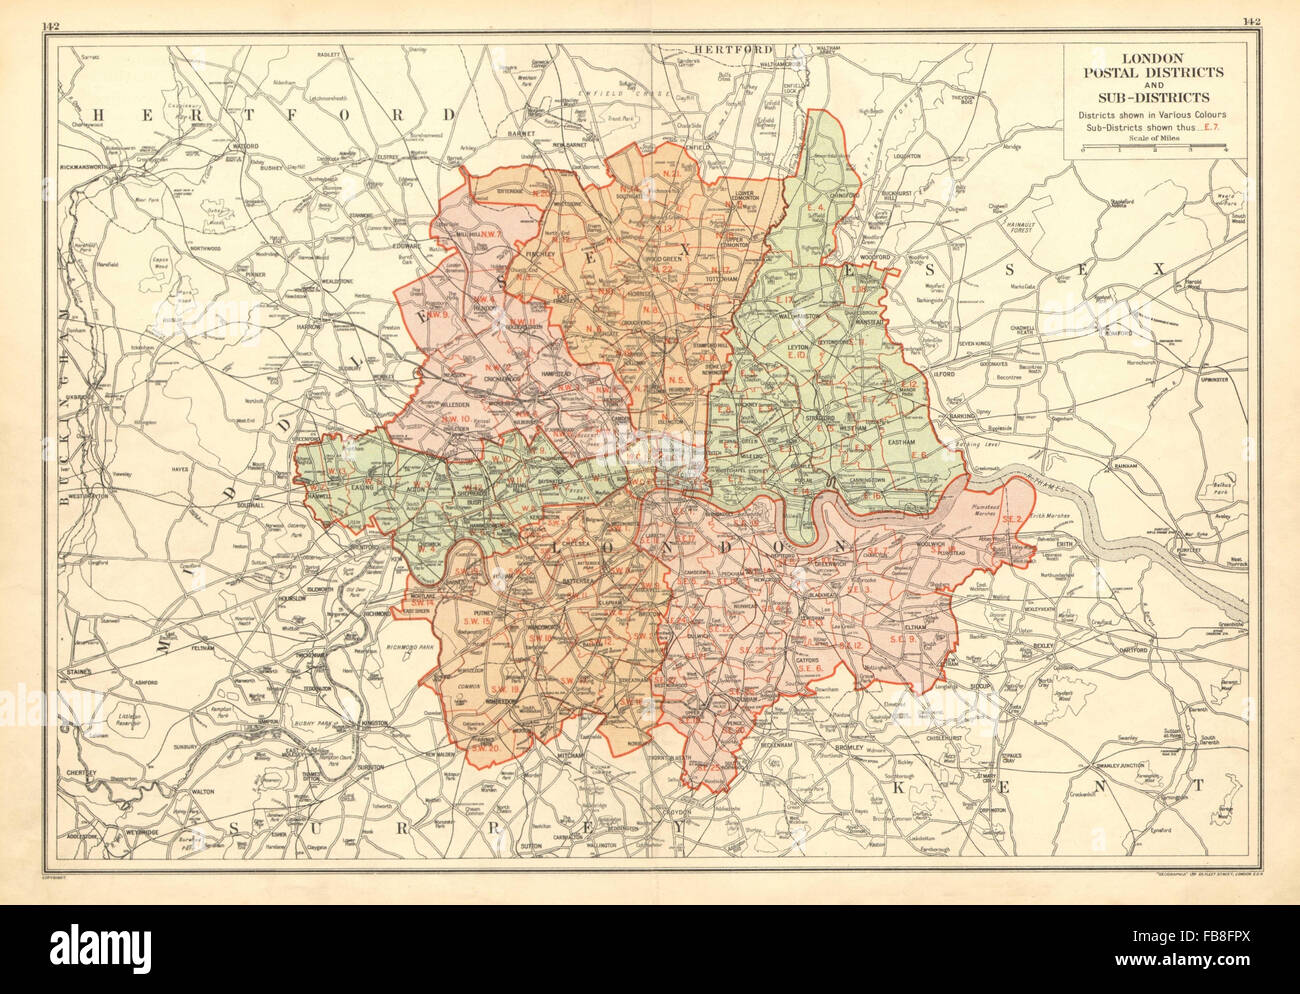 Londres : Les Districts et sous-districts postaux, 1928 carte vintage Banque D'Images